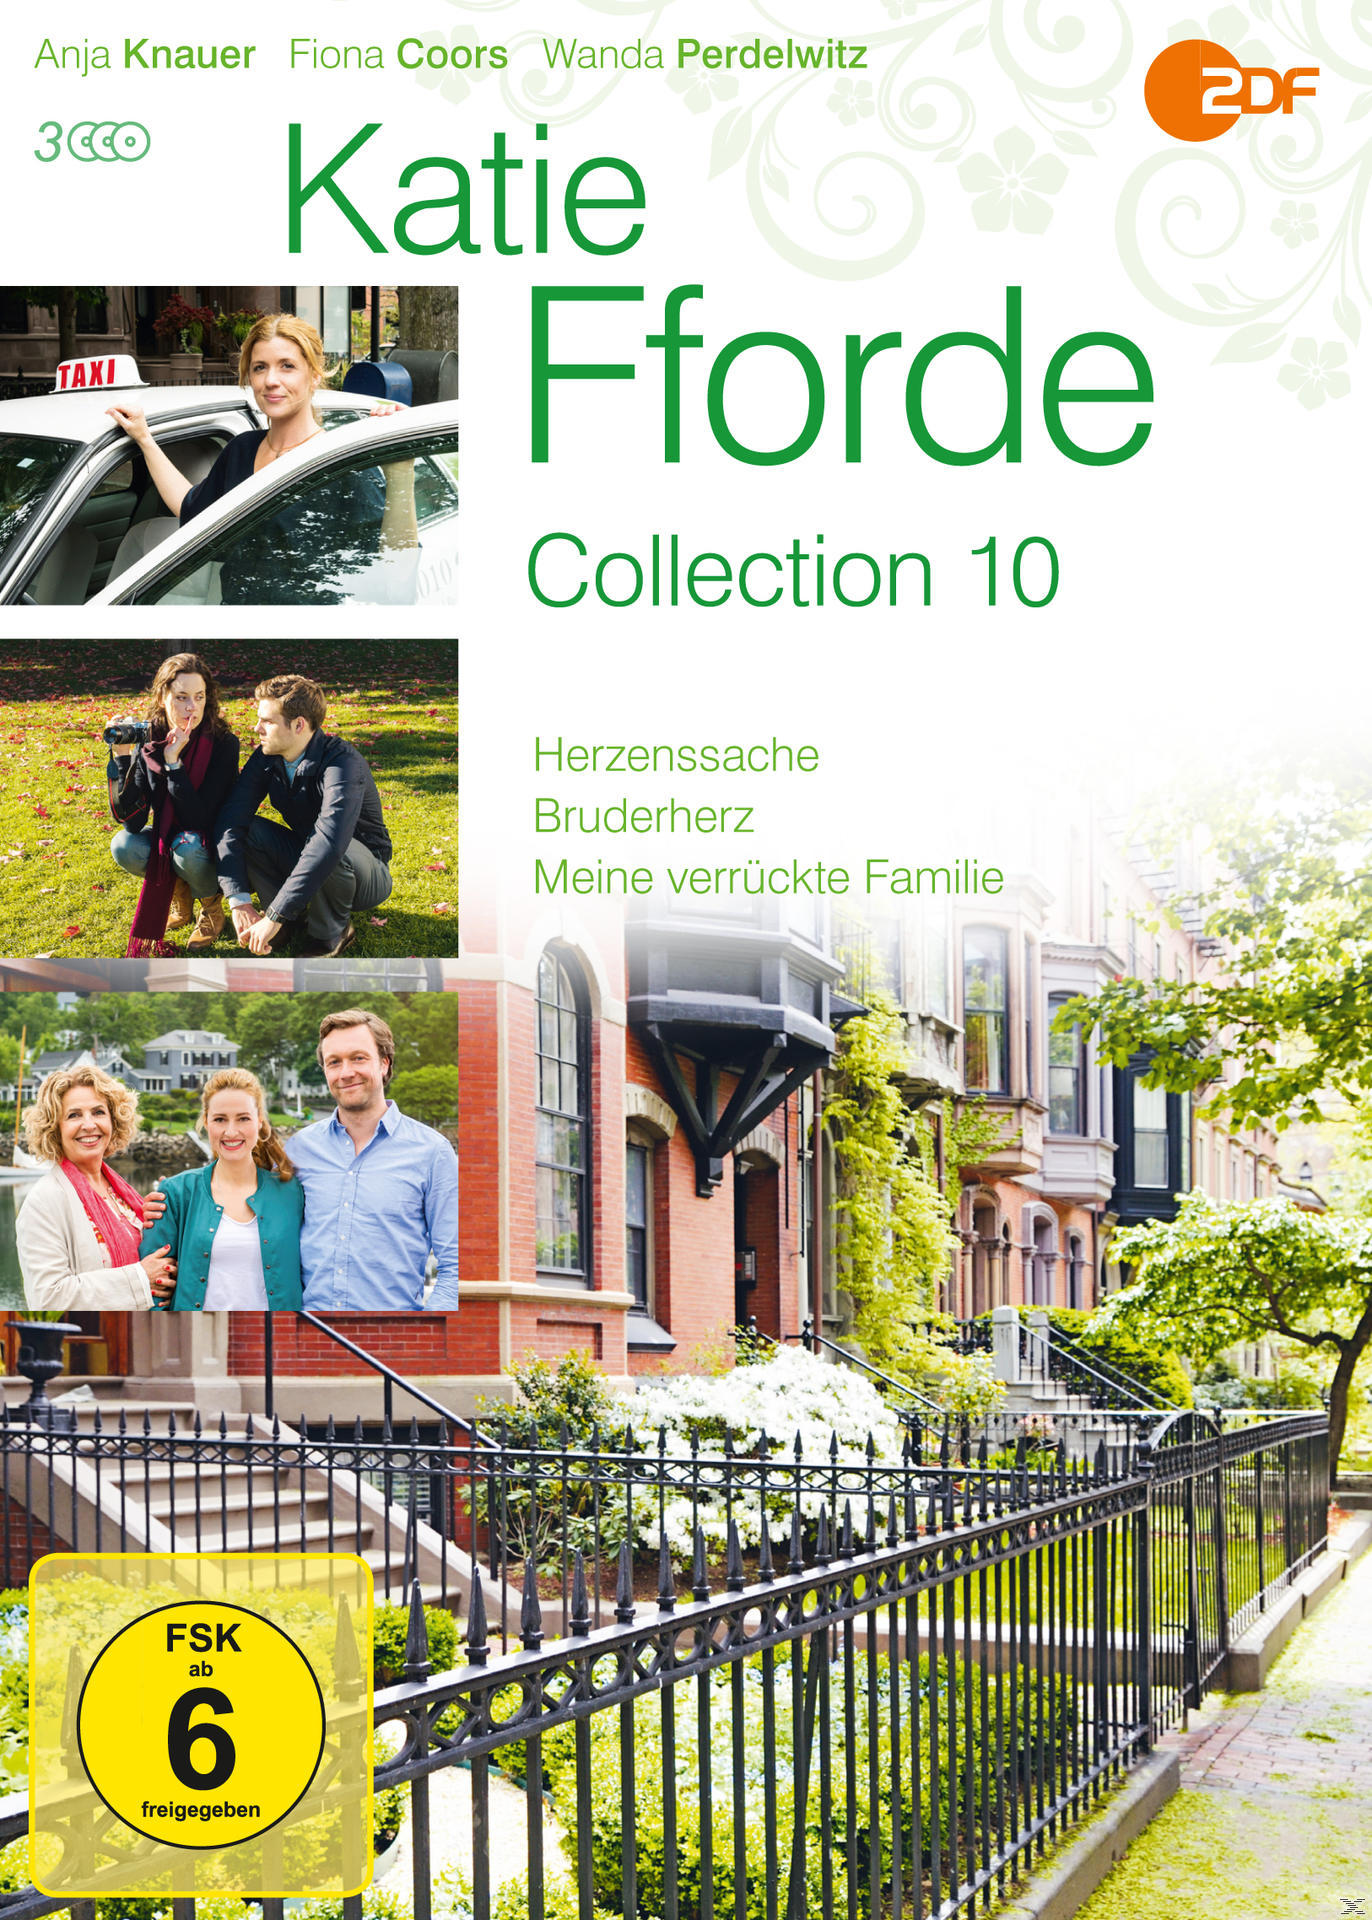 Fforde DVD Collection 10 Katie